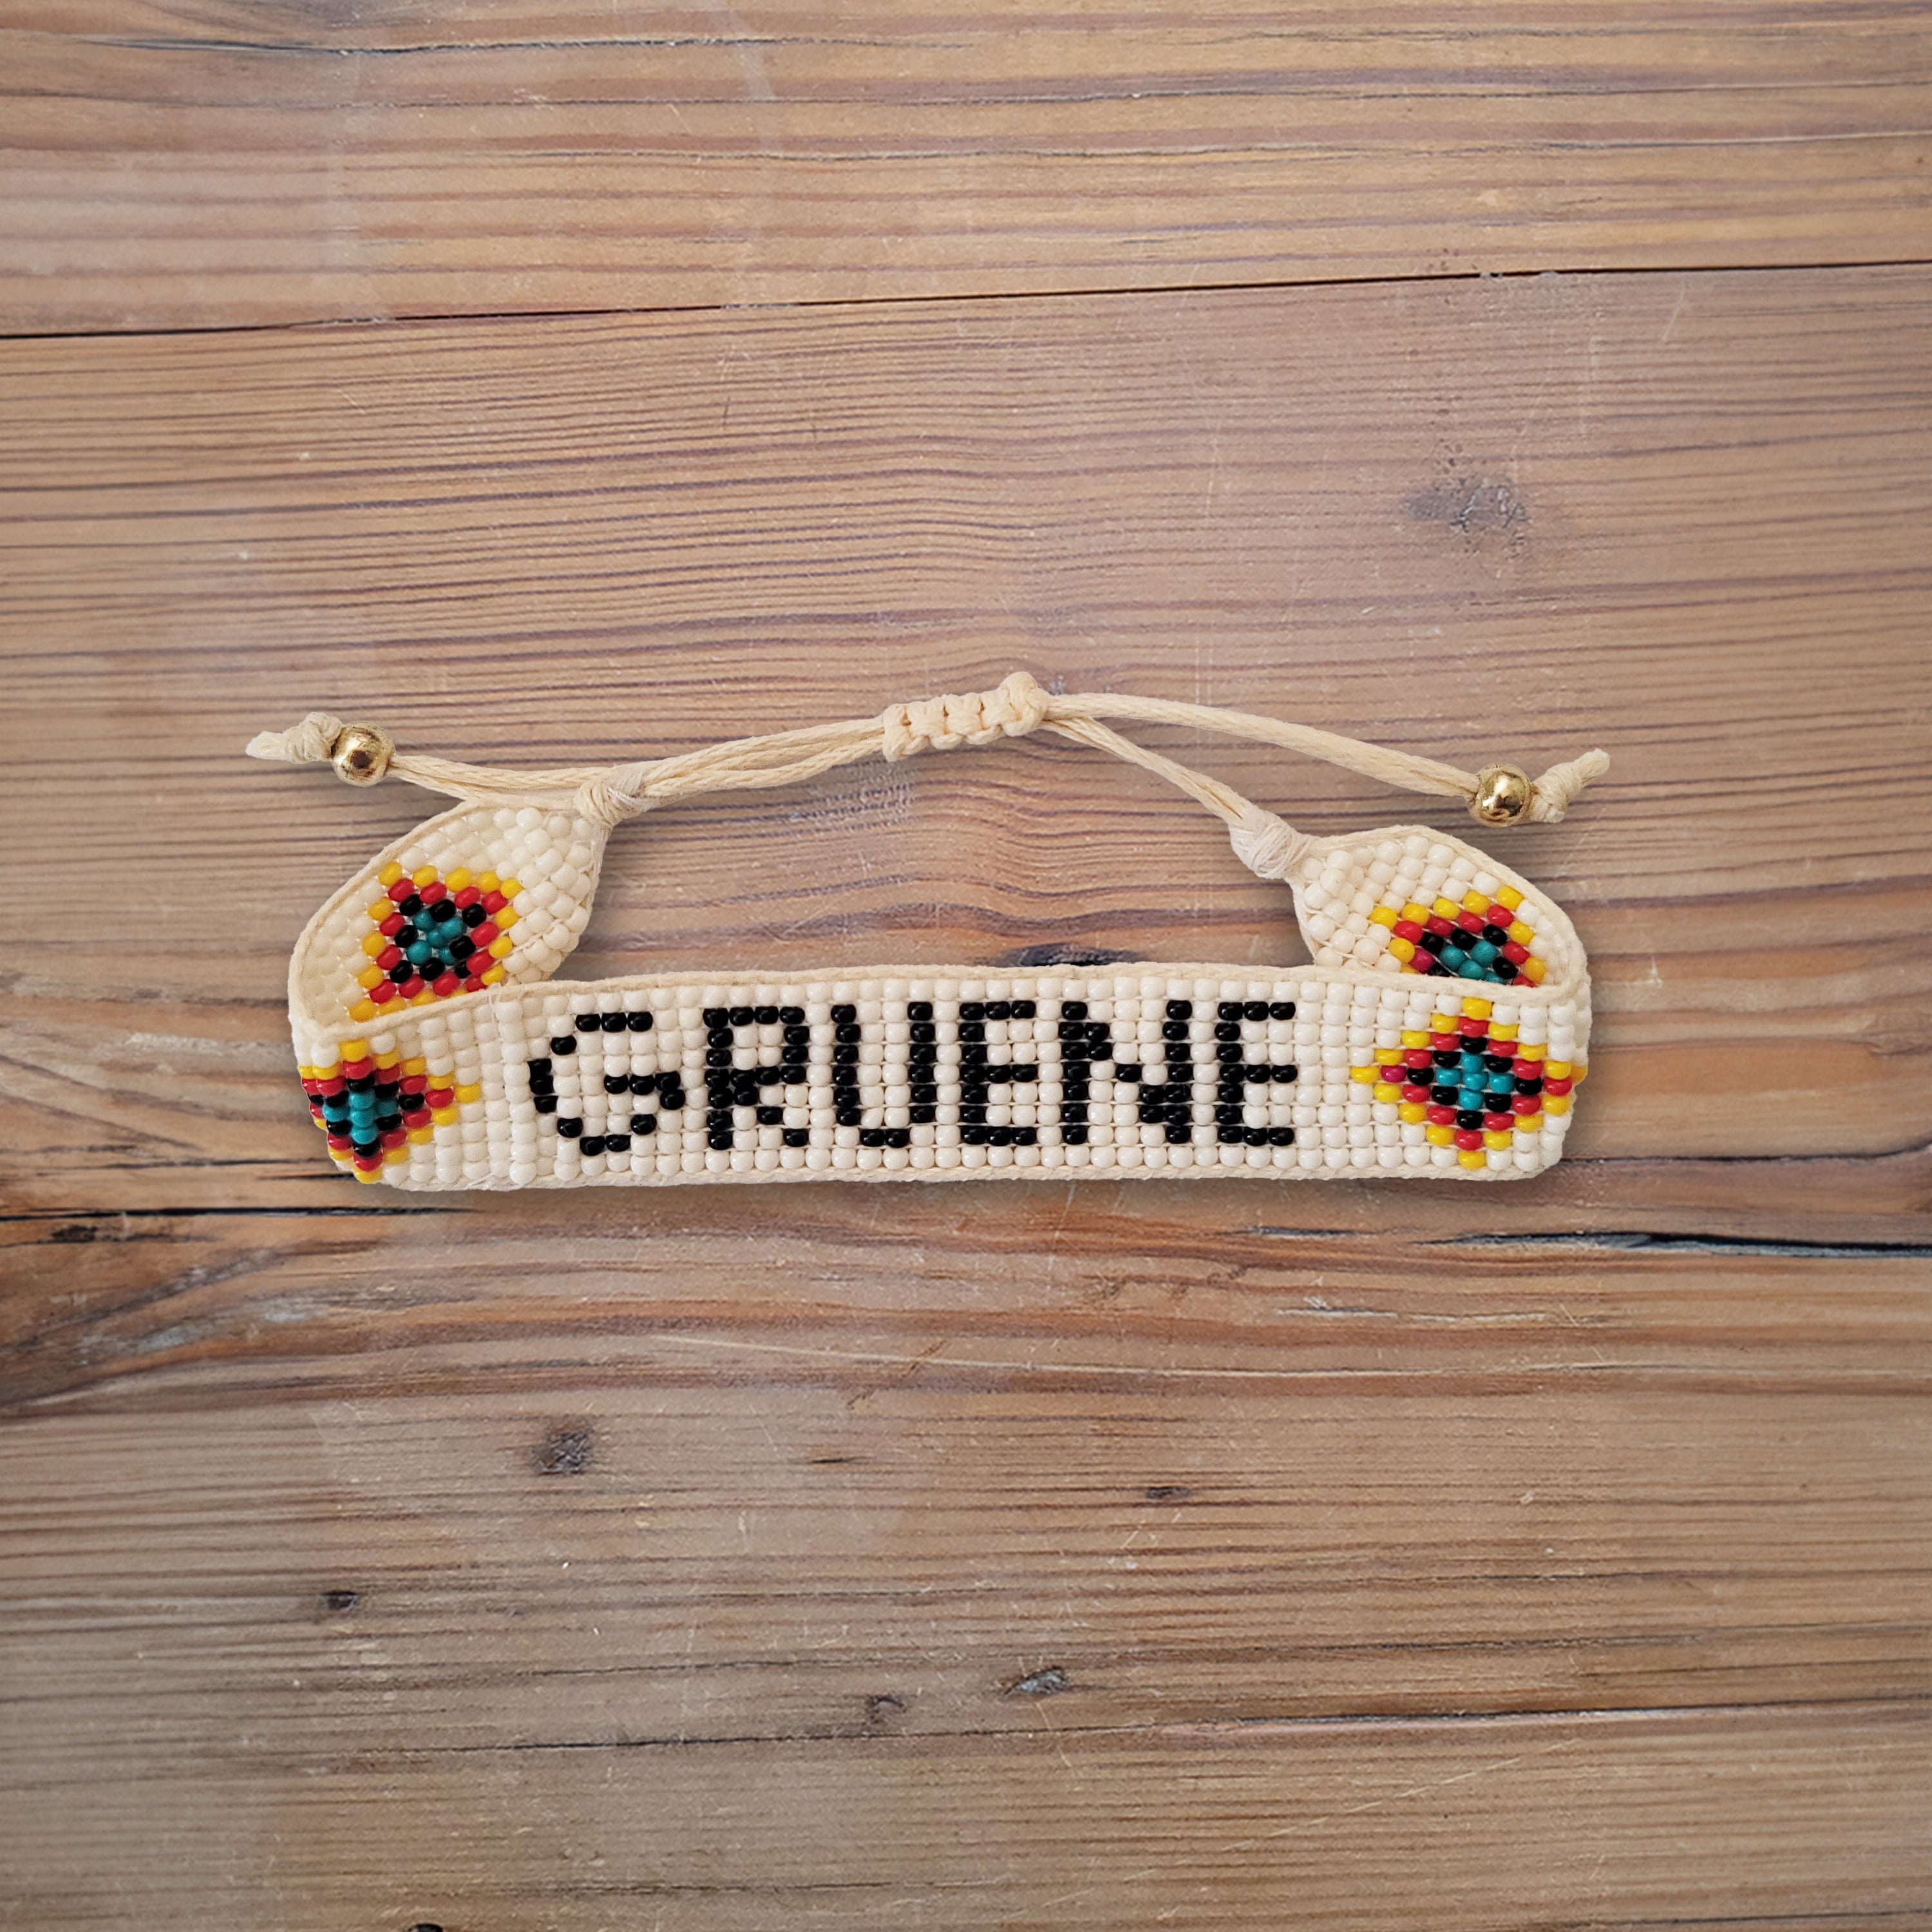 Gruene Beaded Bracelet by Rodeo Hippie